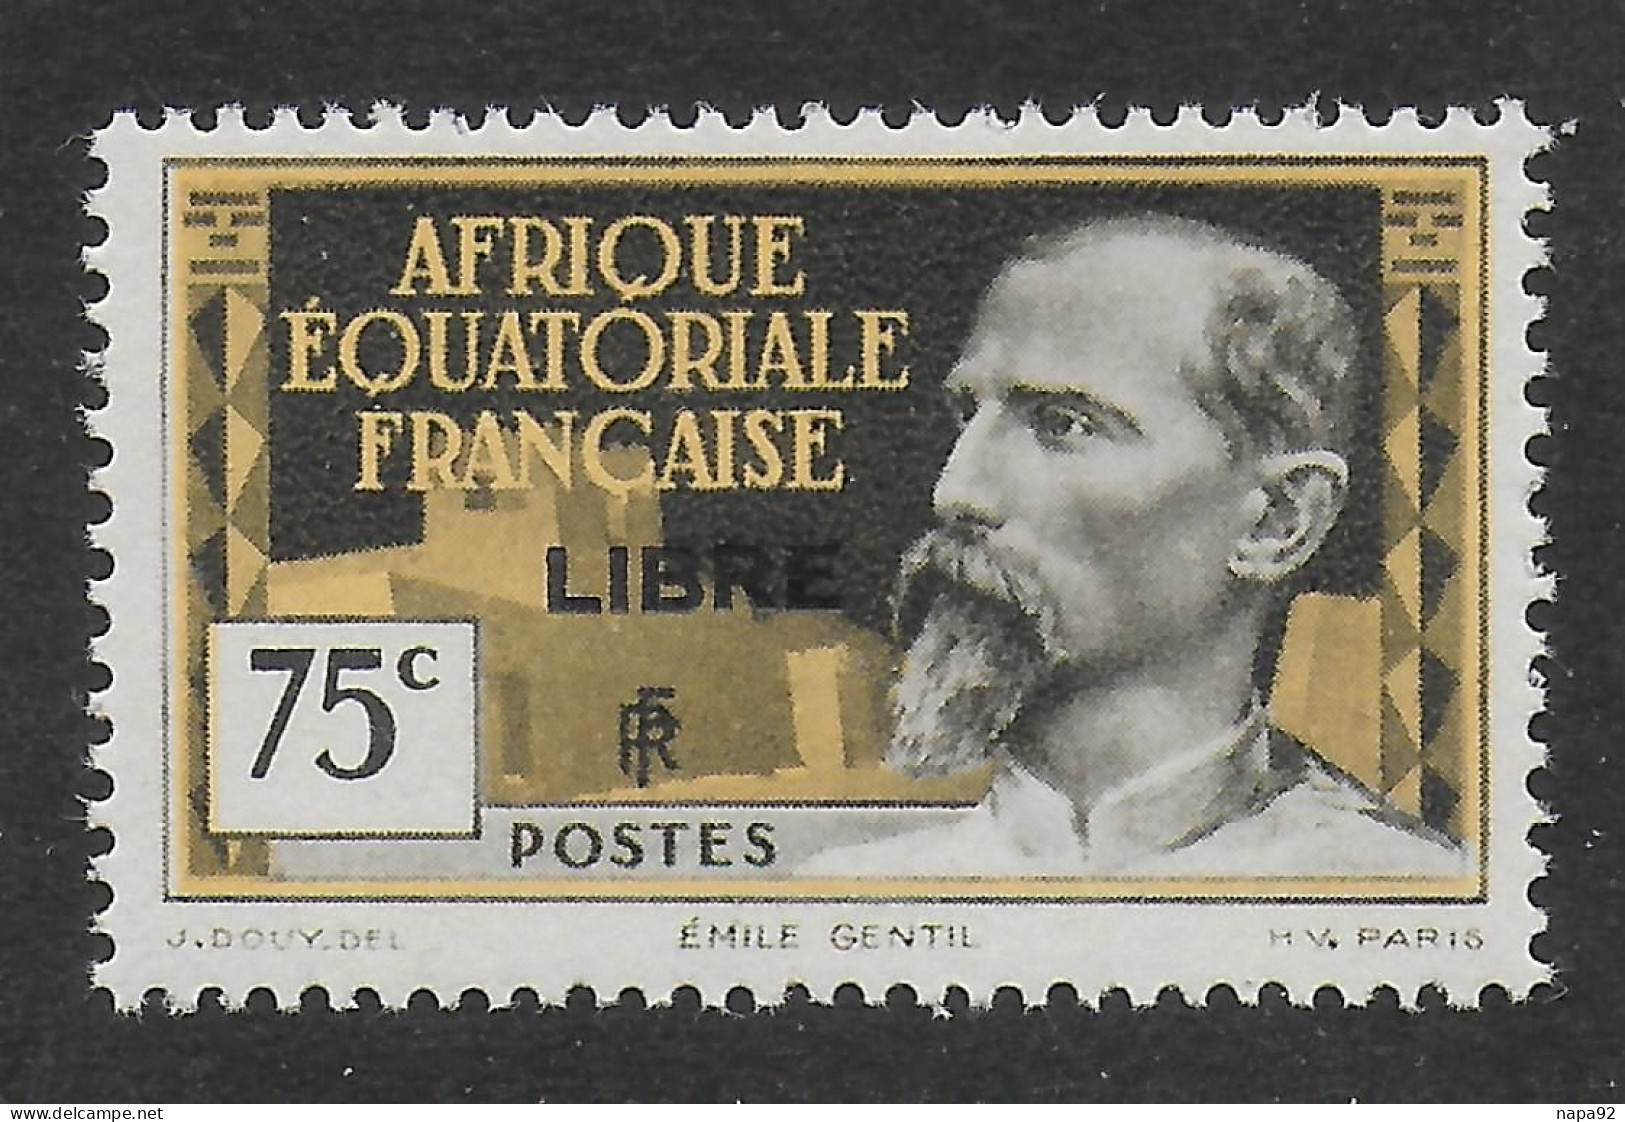 AFRIQUE EQUATORIALE FRANCAISE - AEF - A.E.F. - 1940 - YT 112** - Neufs